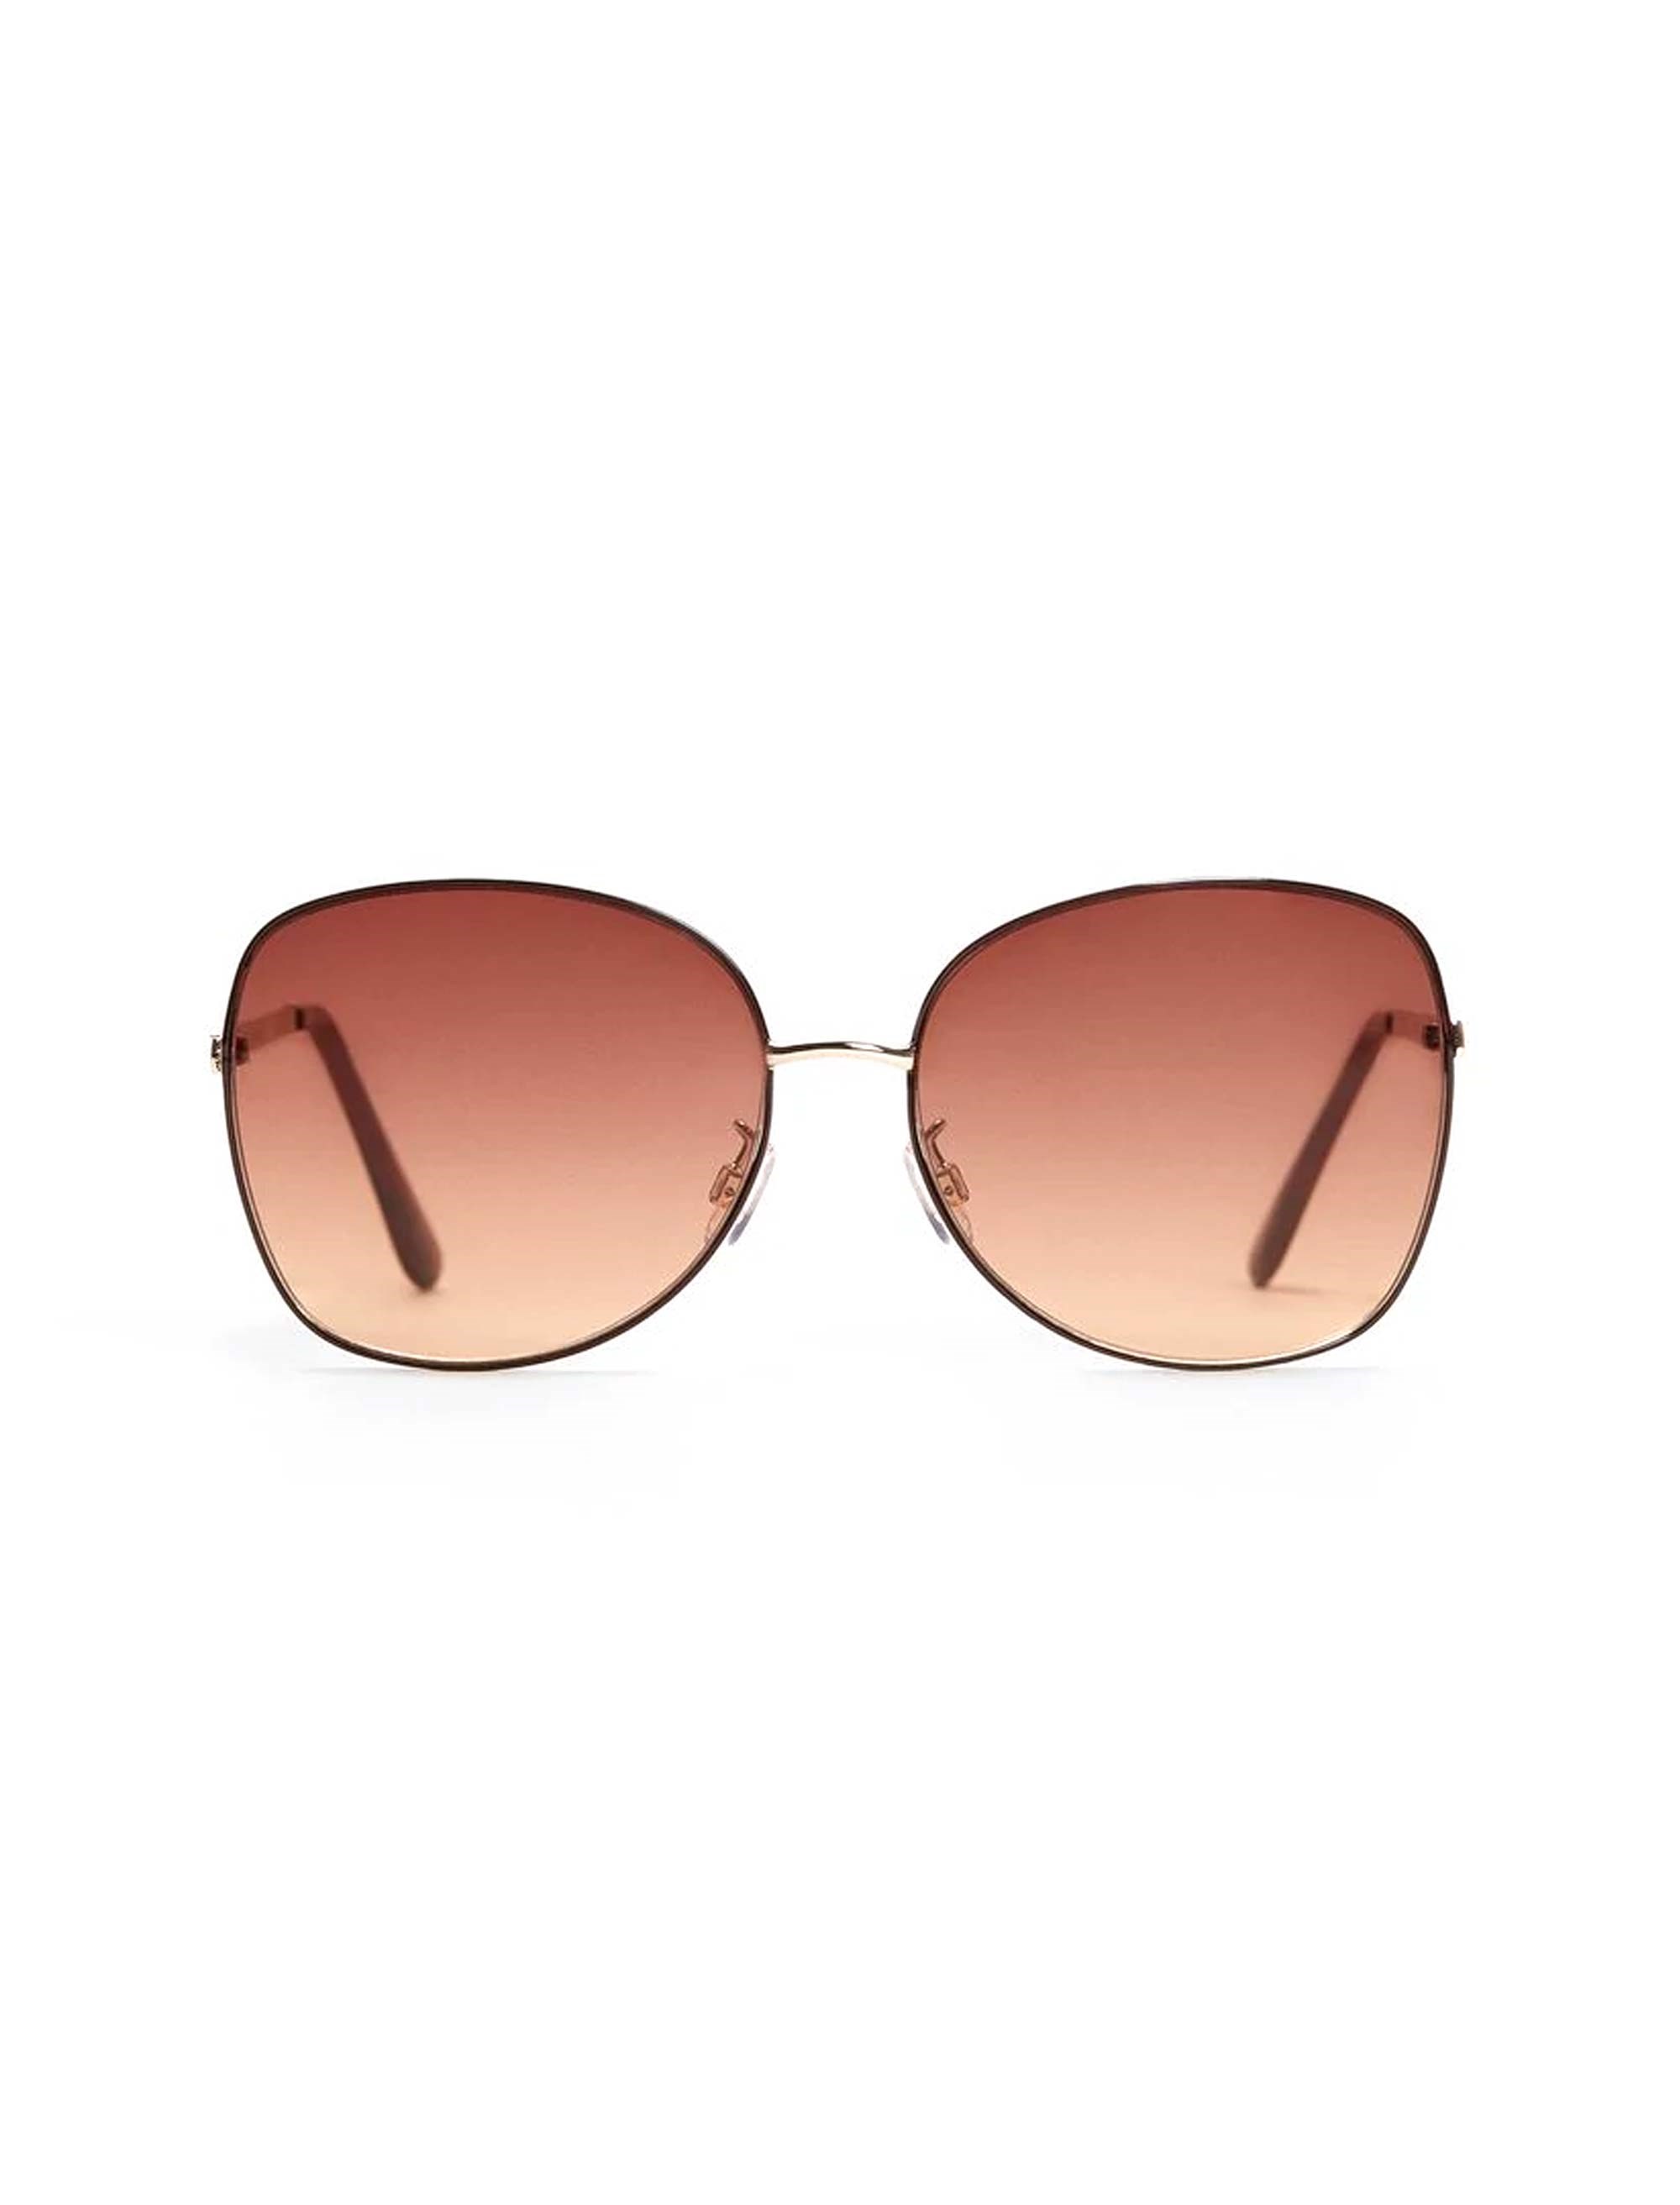 عینک آفتابی خلبانی فلزی زنانه - مانگو - طلايي - 1